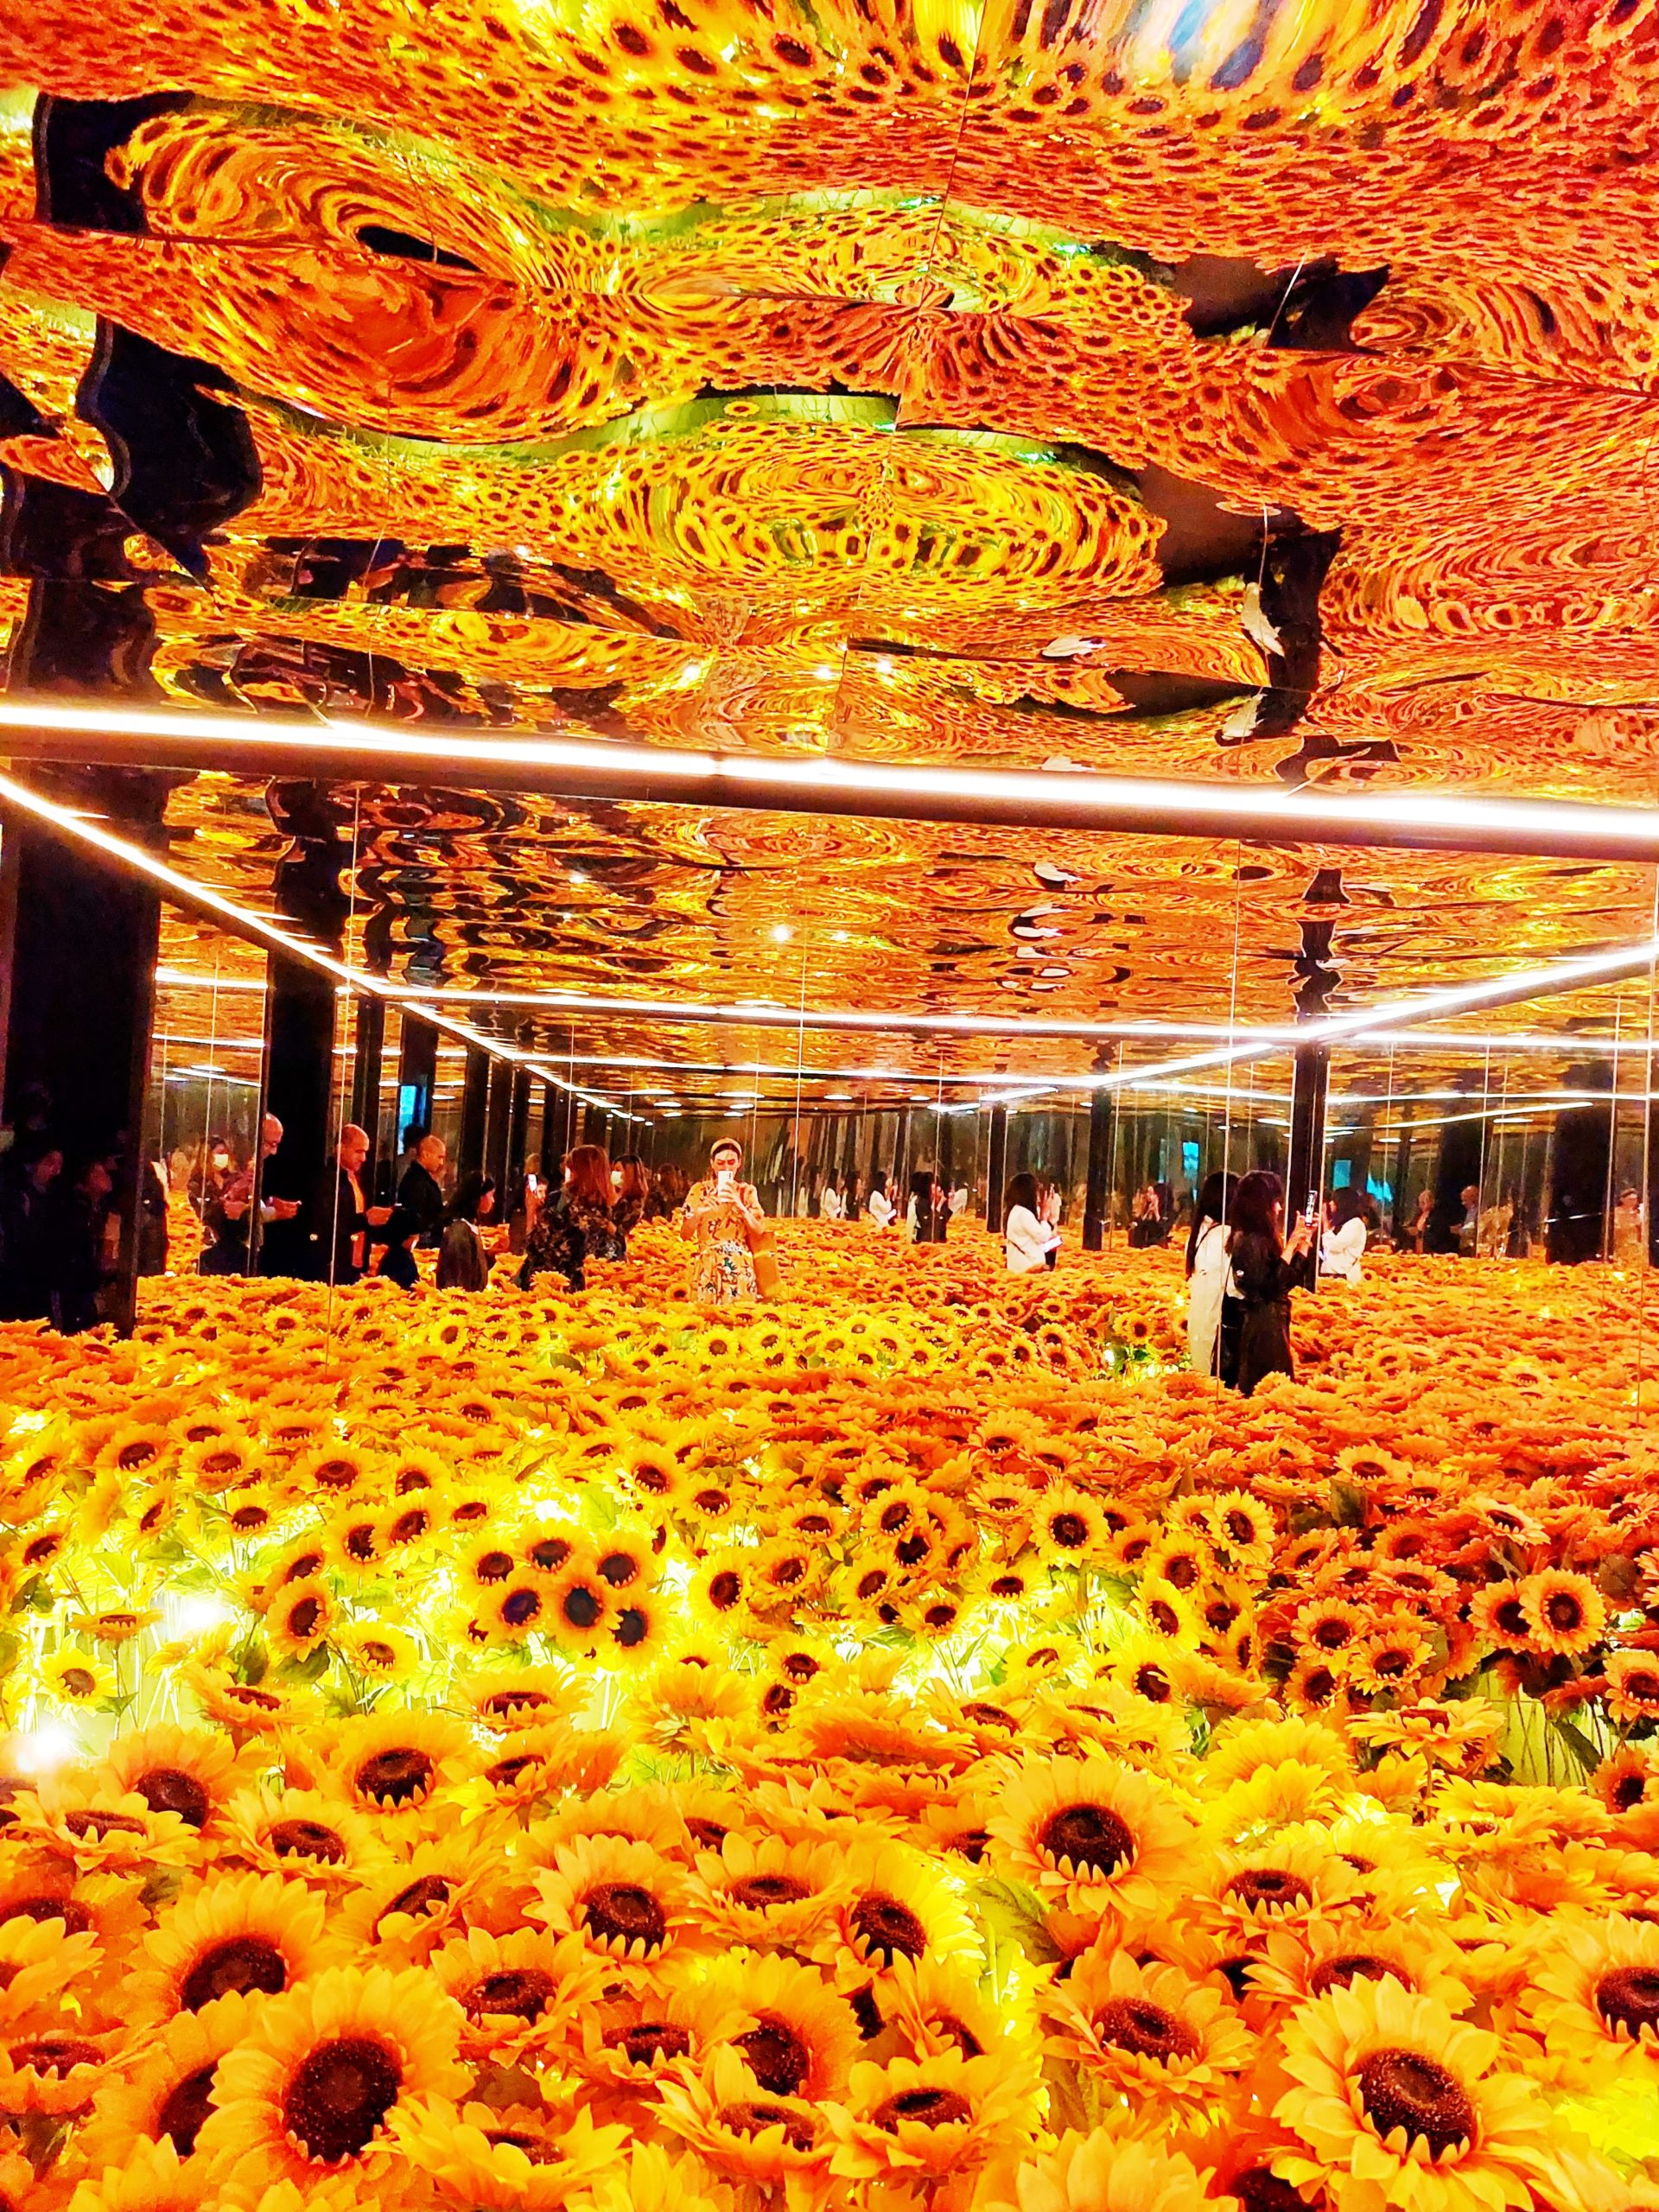 <img src="sunflowersjpg" alt="instagrammable art sunflower room /> 